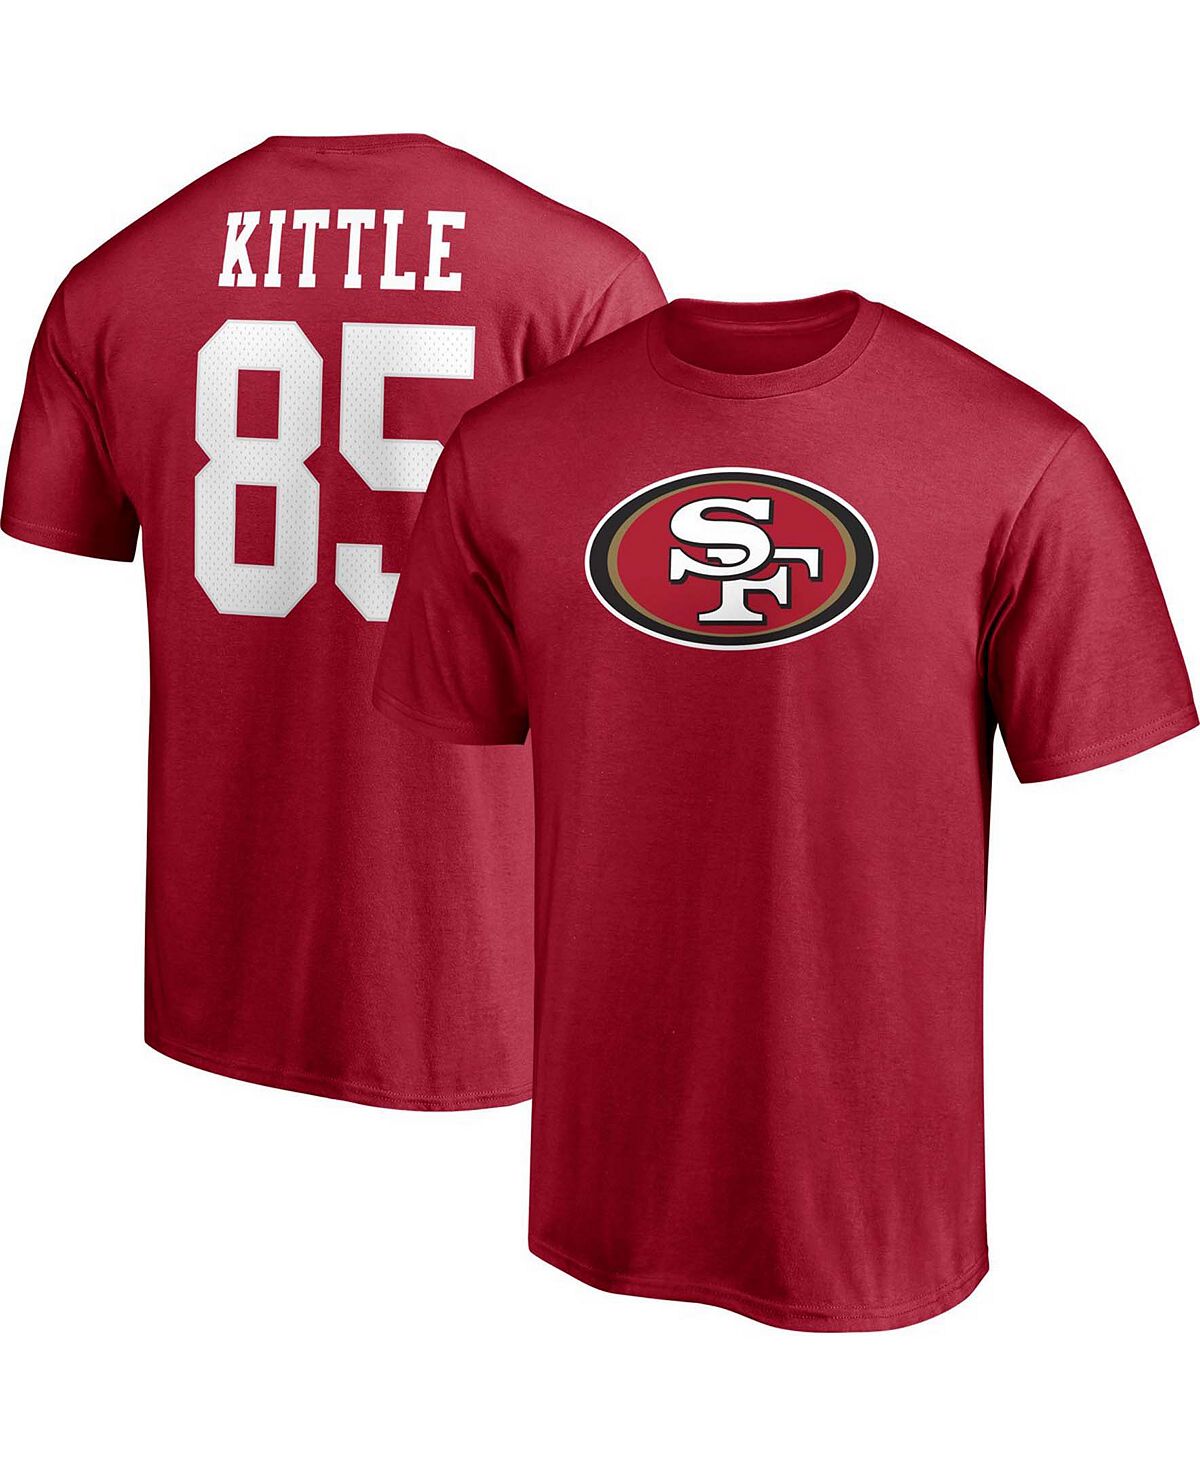 медуница миссис киттл Мужская футболка с именем и номером игрока George Kittle Scarlet San Francisco 49ers Fanatics